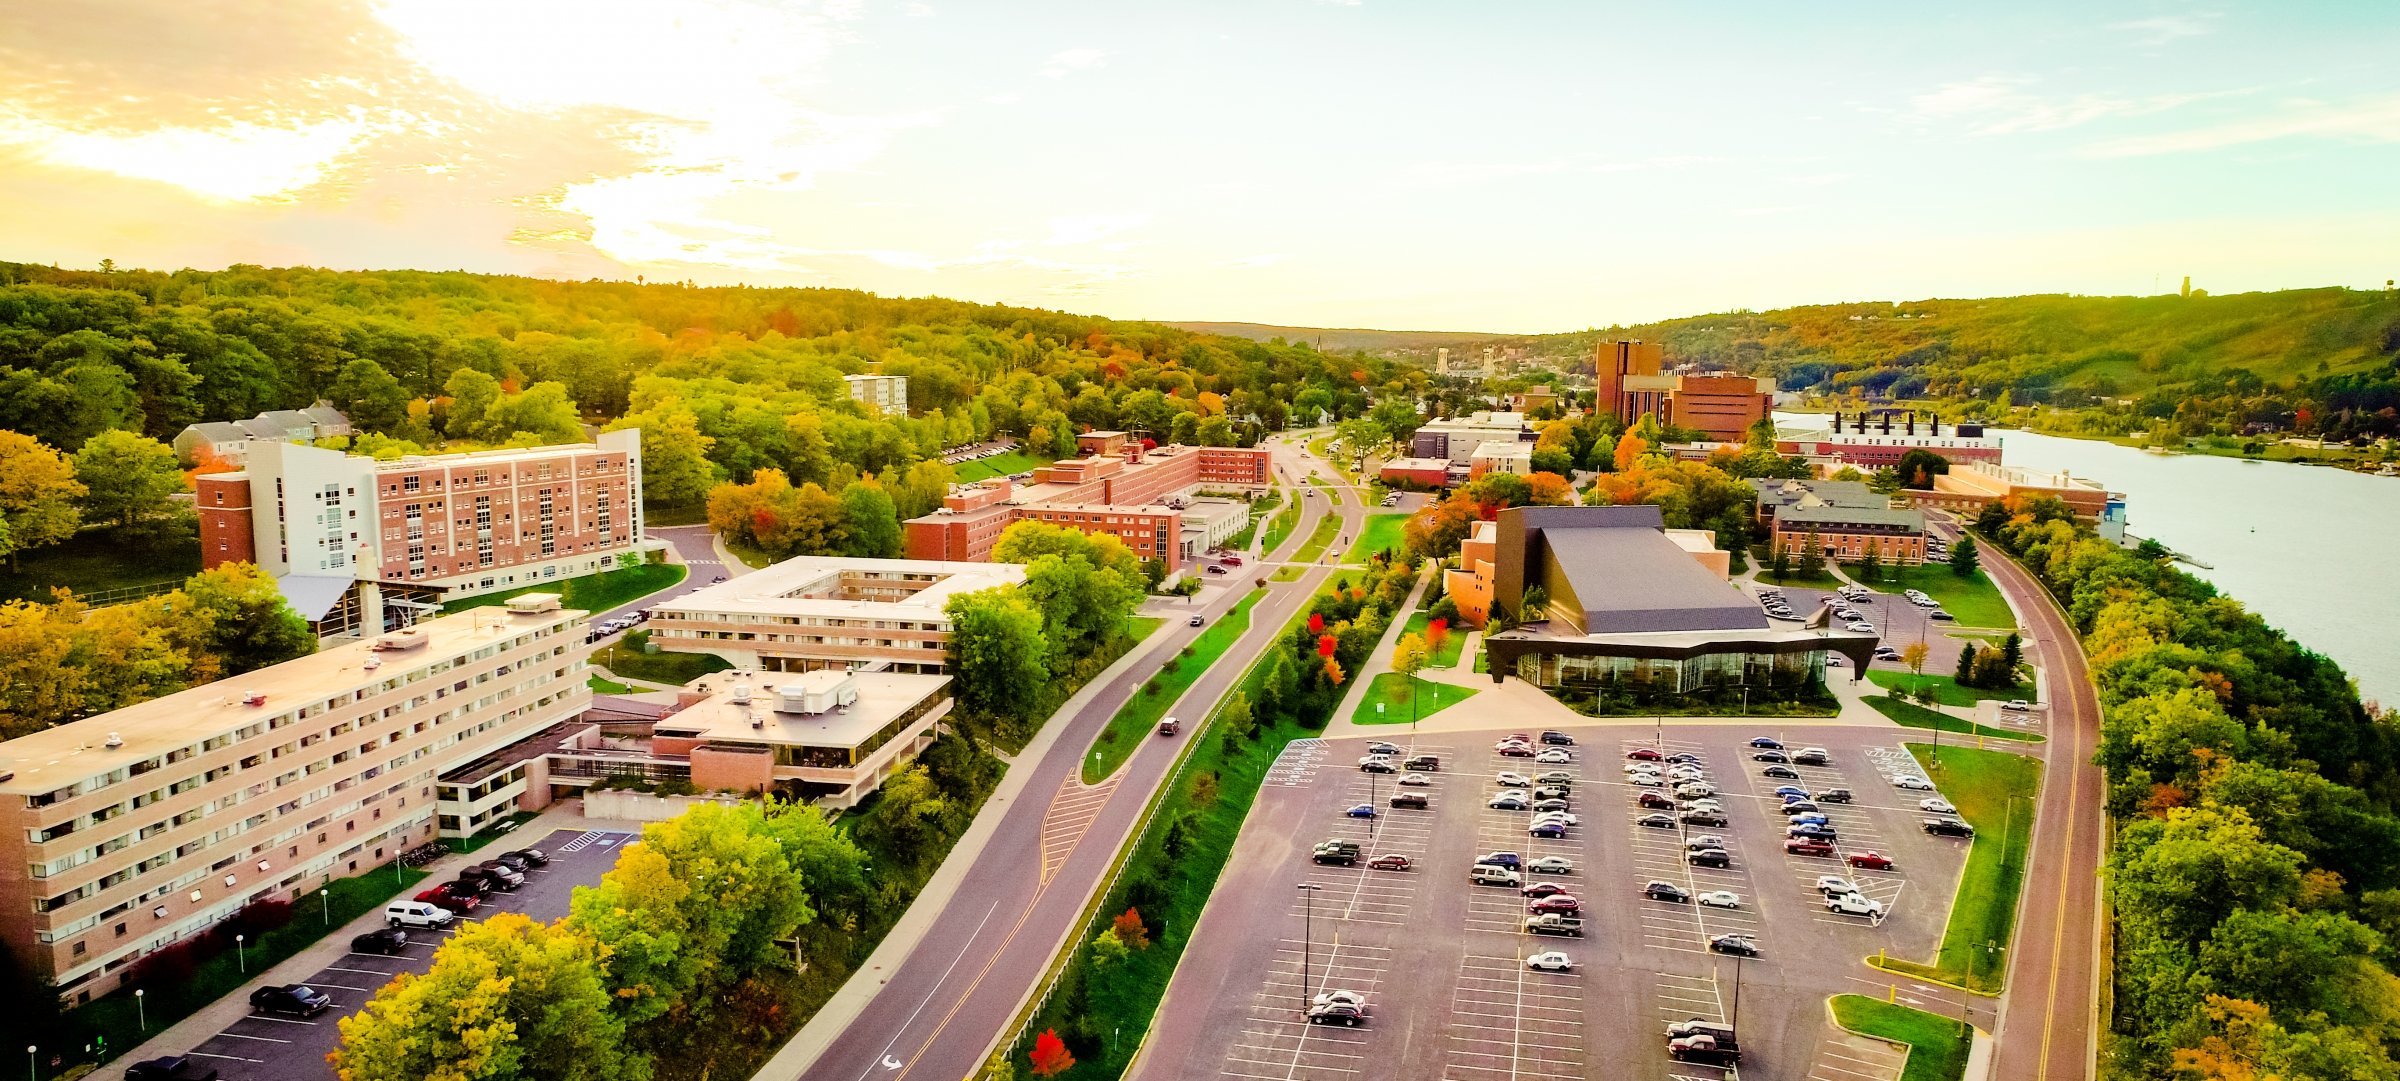 Michigan Tech campus aerial drone image